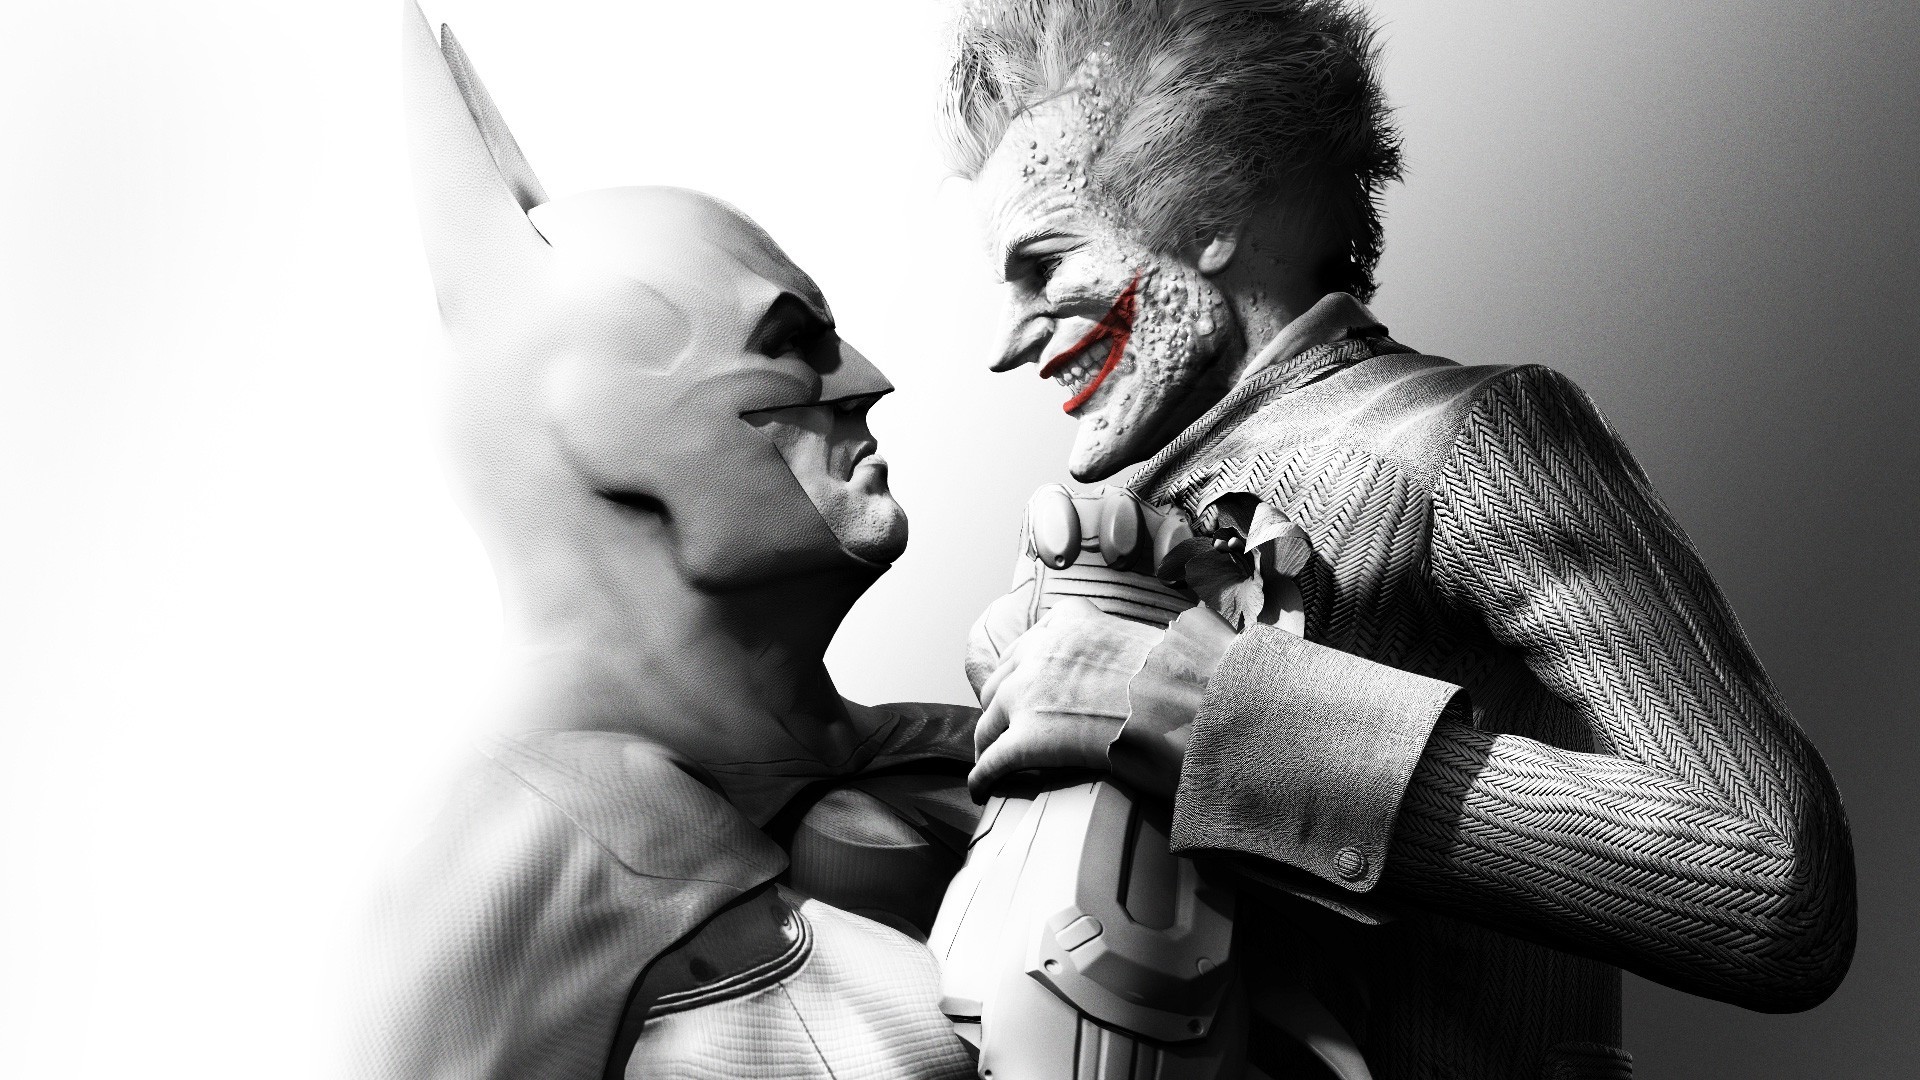 Batman, Joker Wallpaper